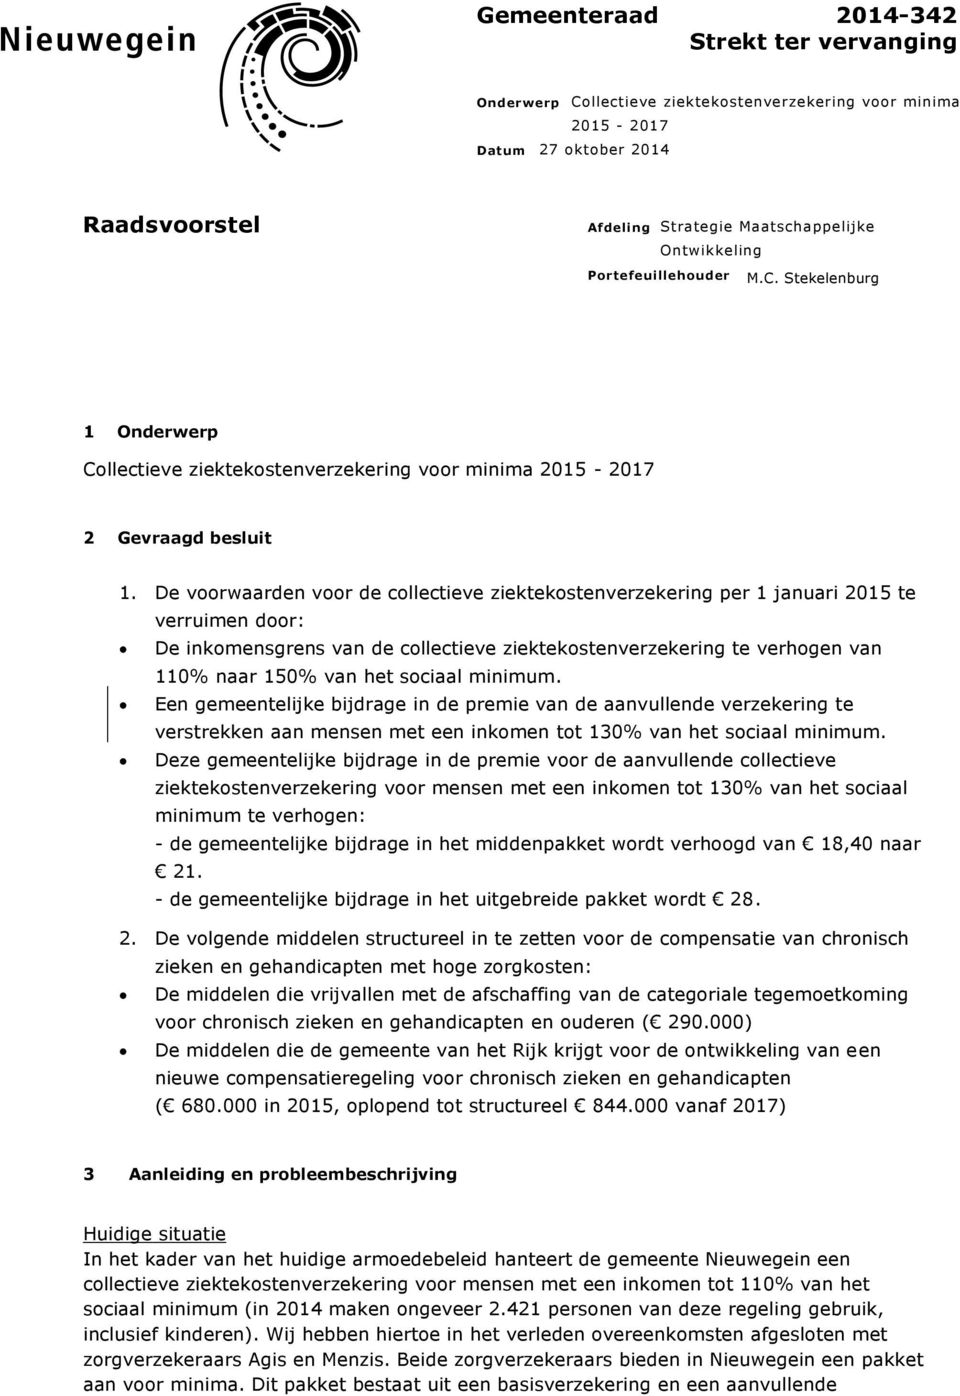 De voorwaarden voor de collectieve ziektekostenverzekering per 1 januari 2015 te verruimen door: De inkomensgrens van de collectieve ziektekostenverzekering te verhogen van 110% naar 150% van het